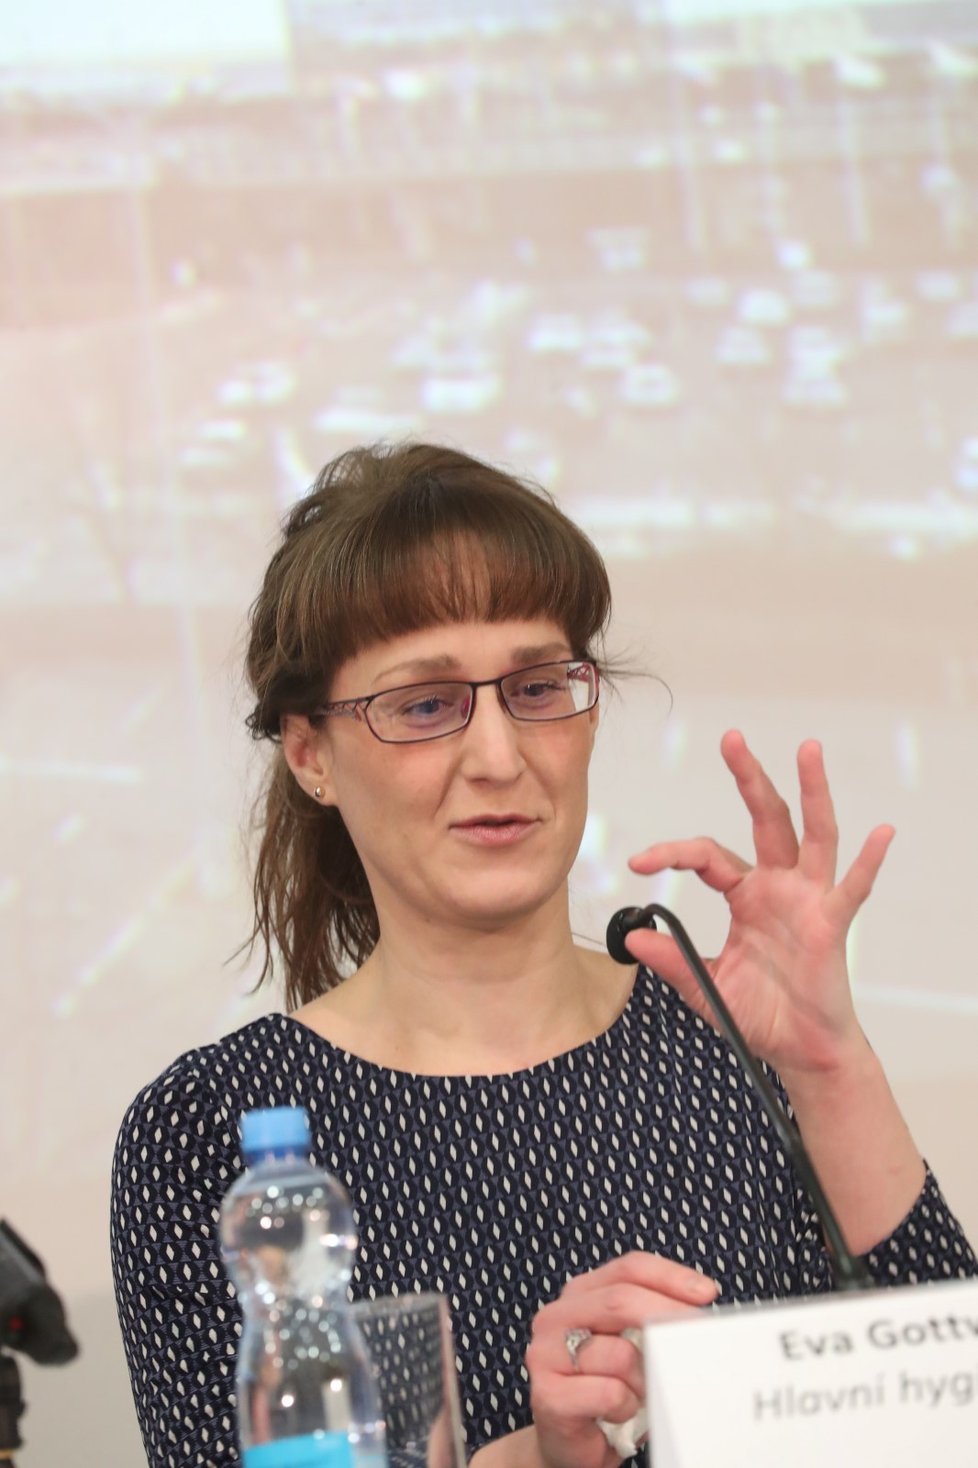 Šéfka hygieniků Eva Gottvaldová na mimořádné tiskové konferenci k opatřením kvůli koronaviru. (26.1.2020)